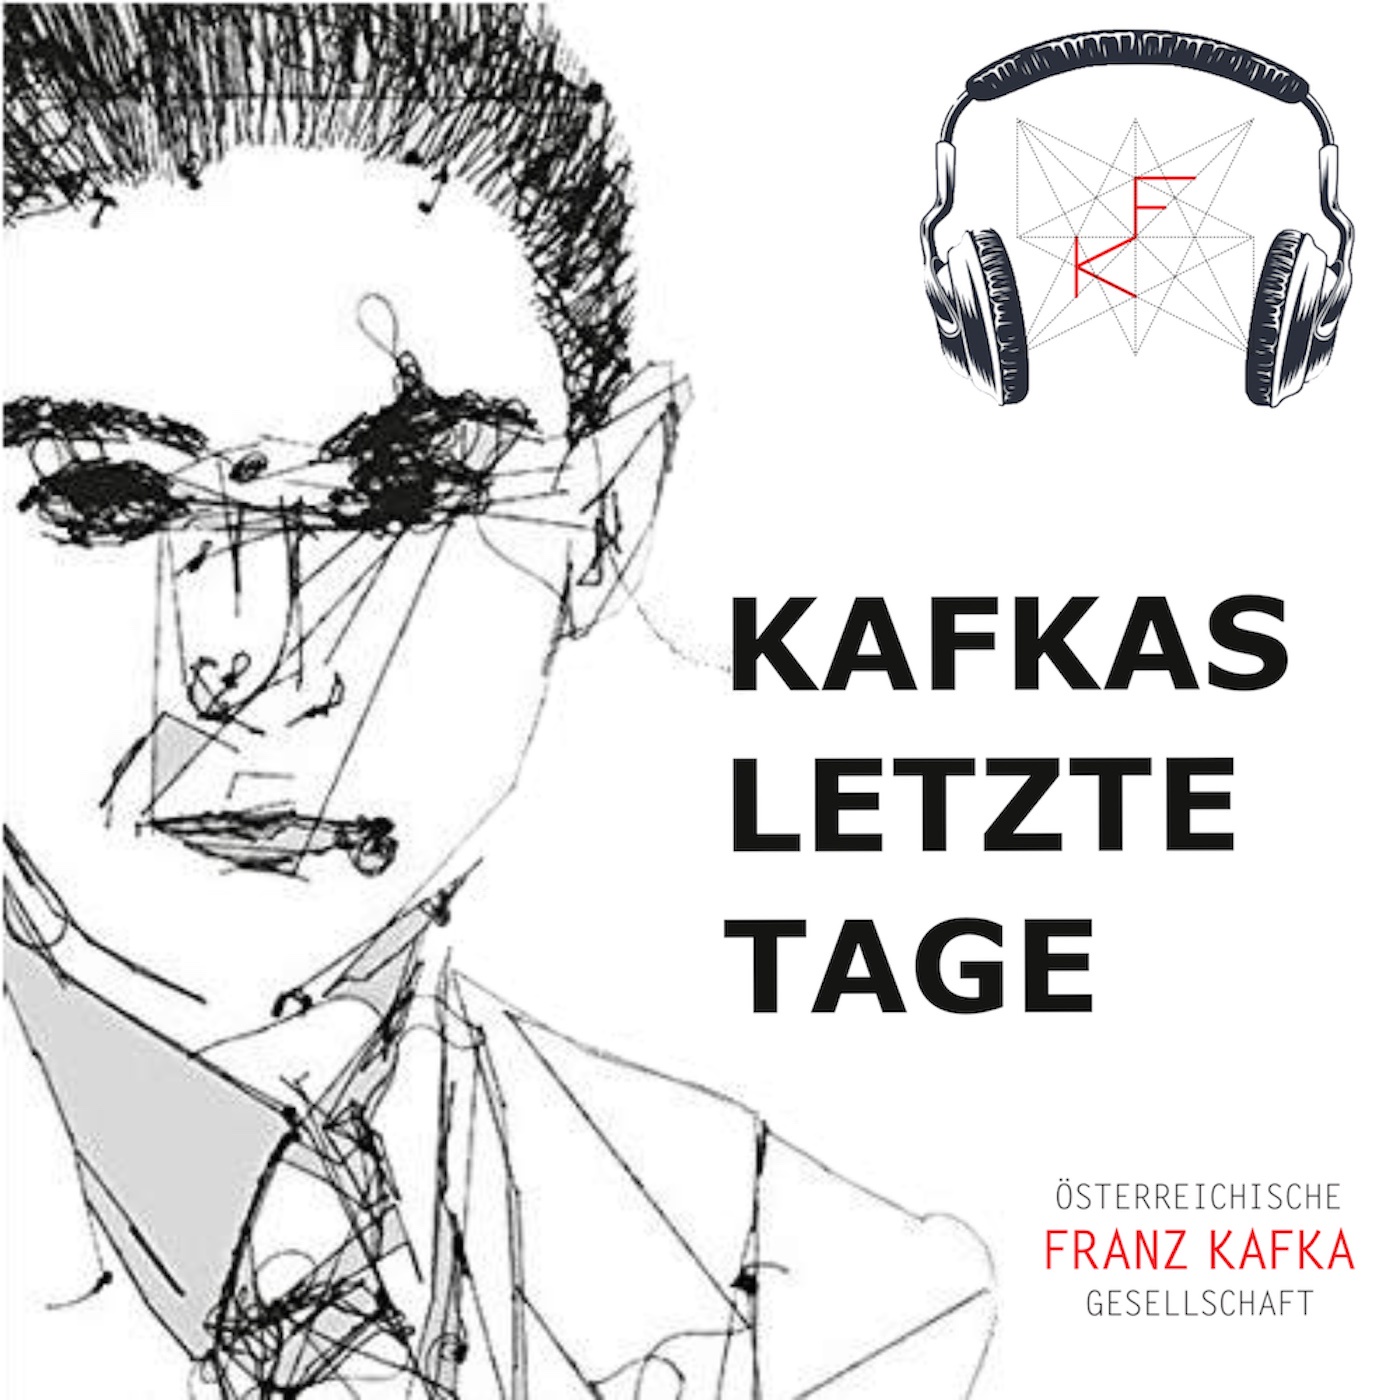 Kafkas letzte Tage